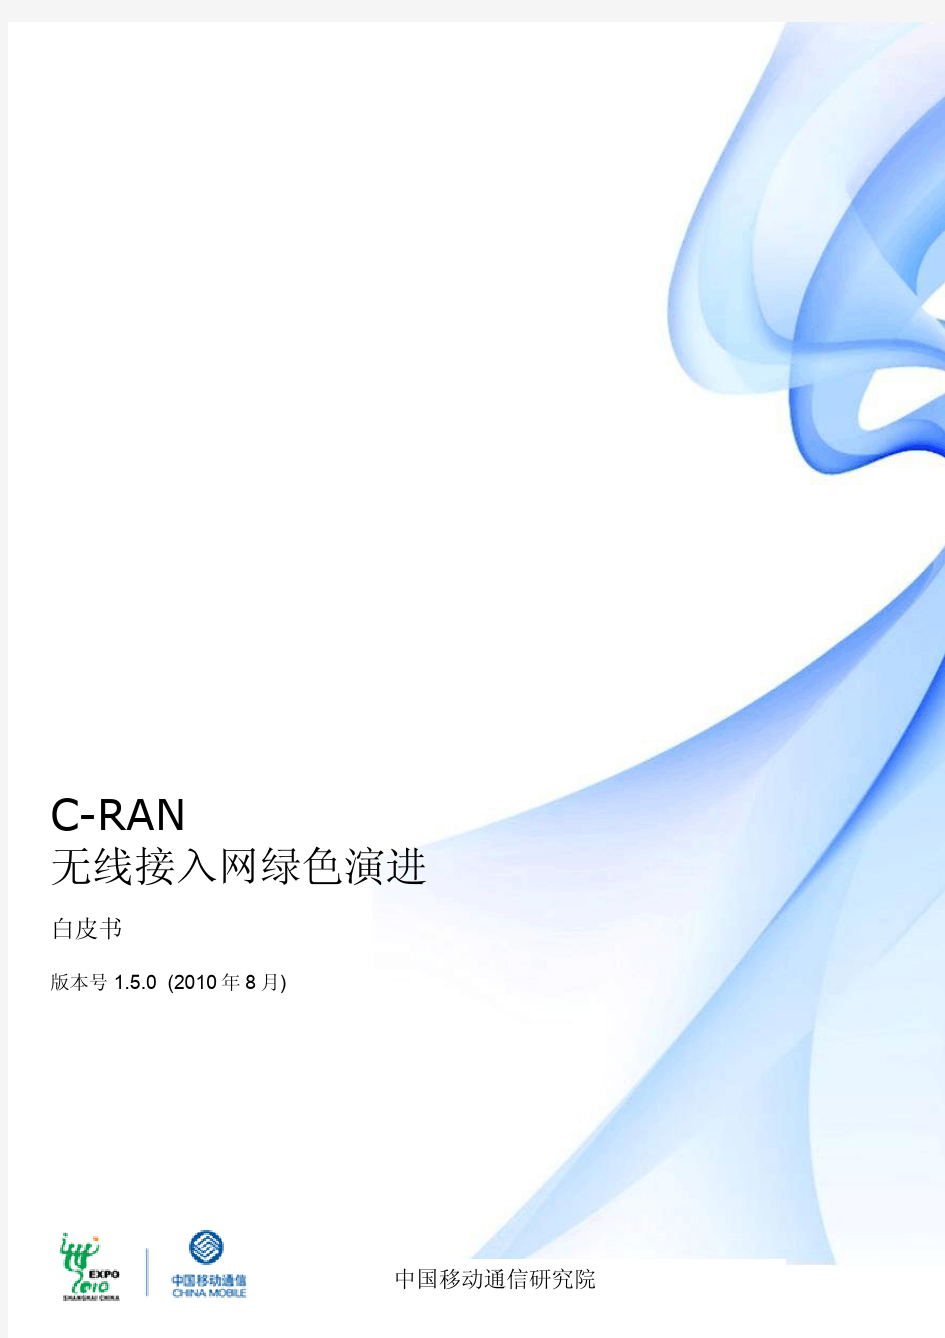 C-RAN白皮书中文版